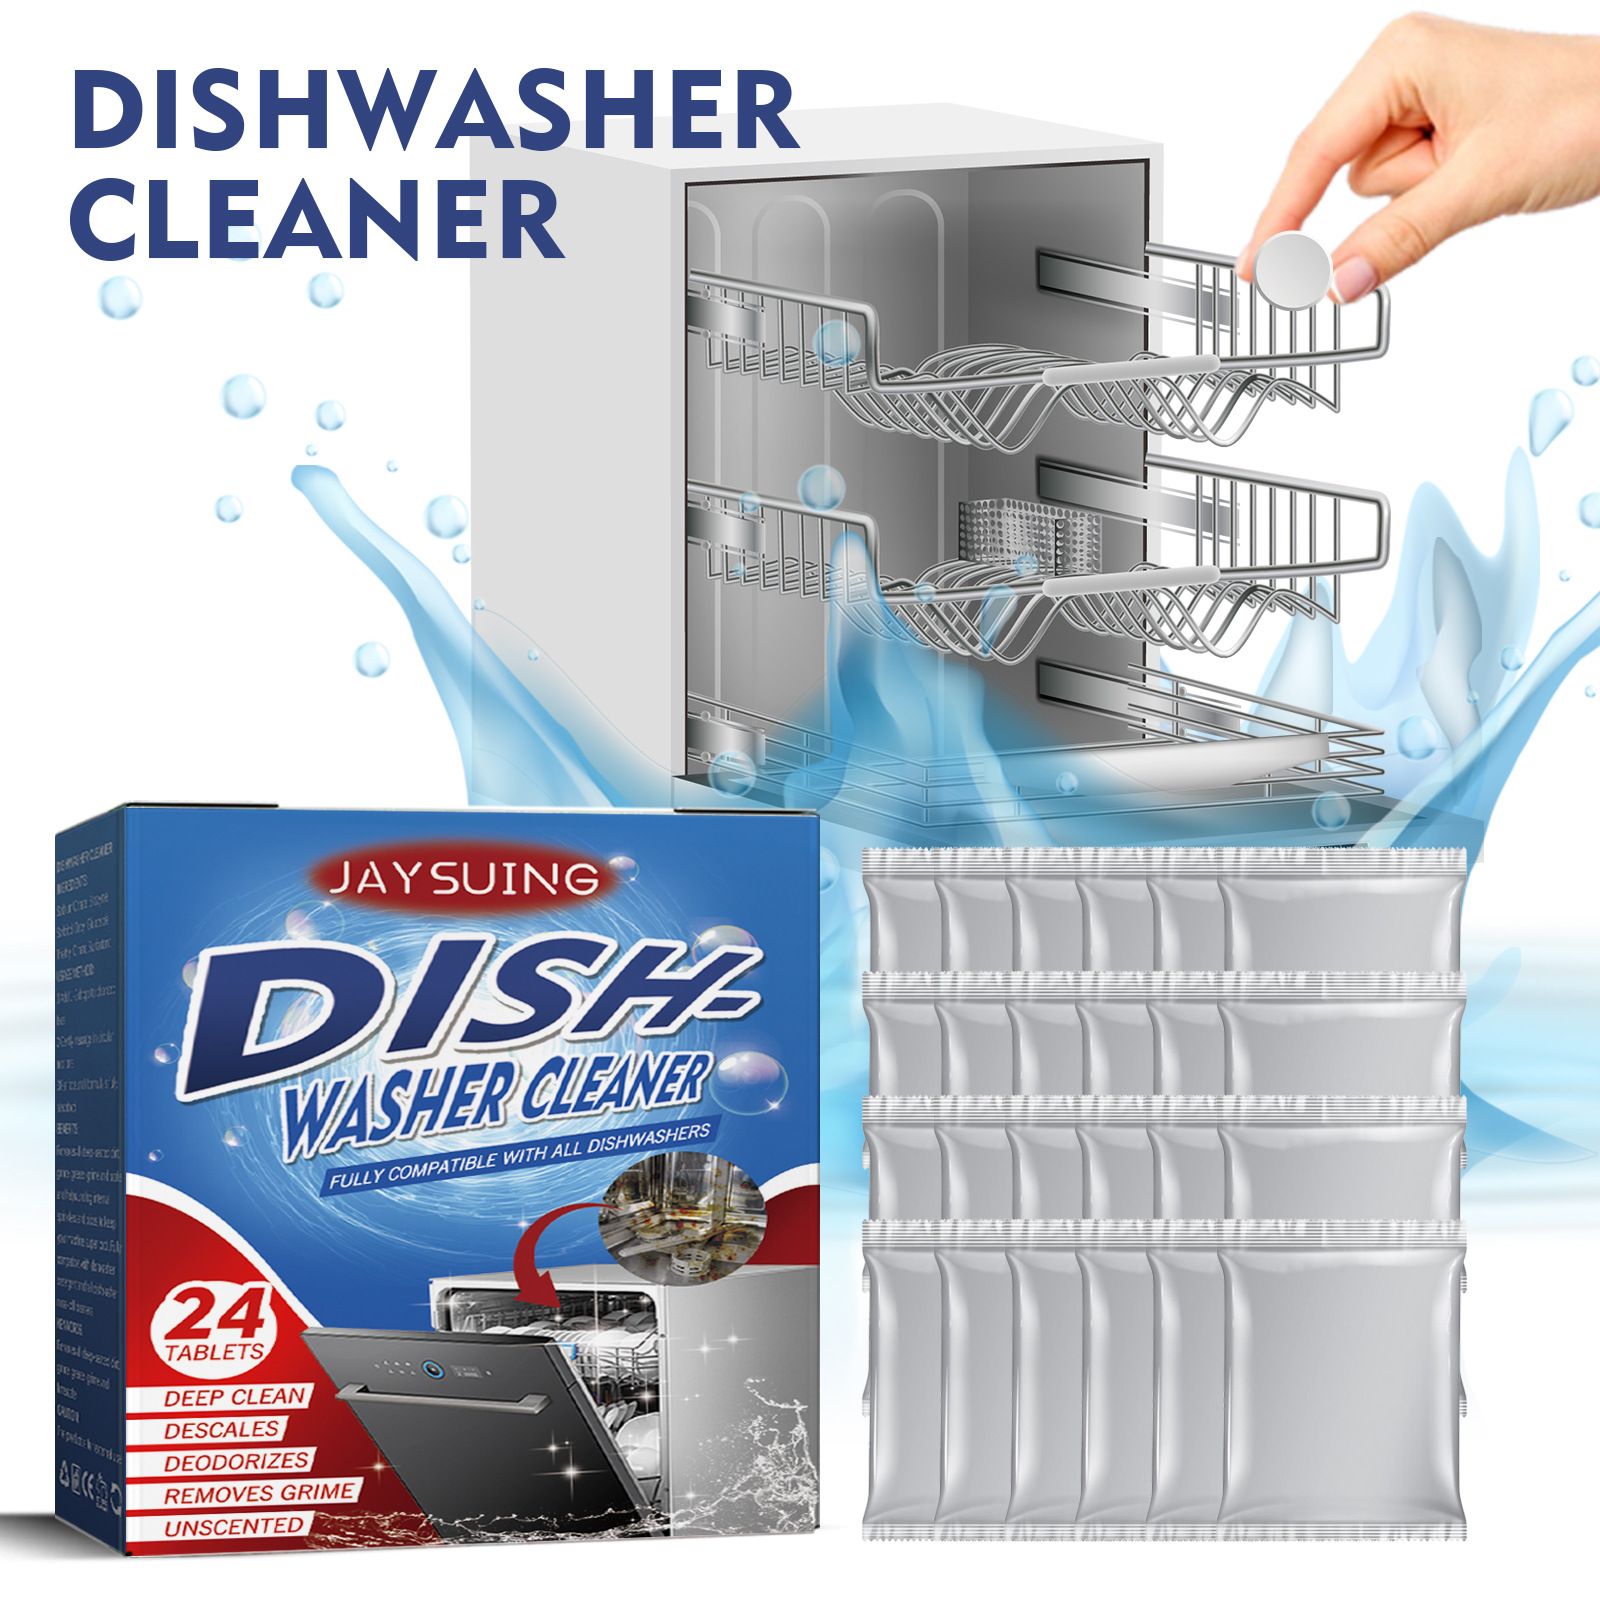 Таблетки для очистки посудомоечной. Очиститель для посудомоечных машин. Cleaner для посудомоечной. Таблетки для очистки стиральной машины. Dishwasher Cleaner back Label.